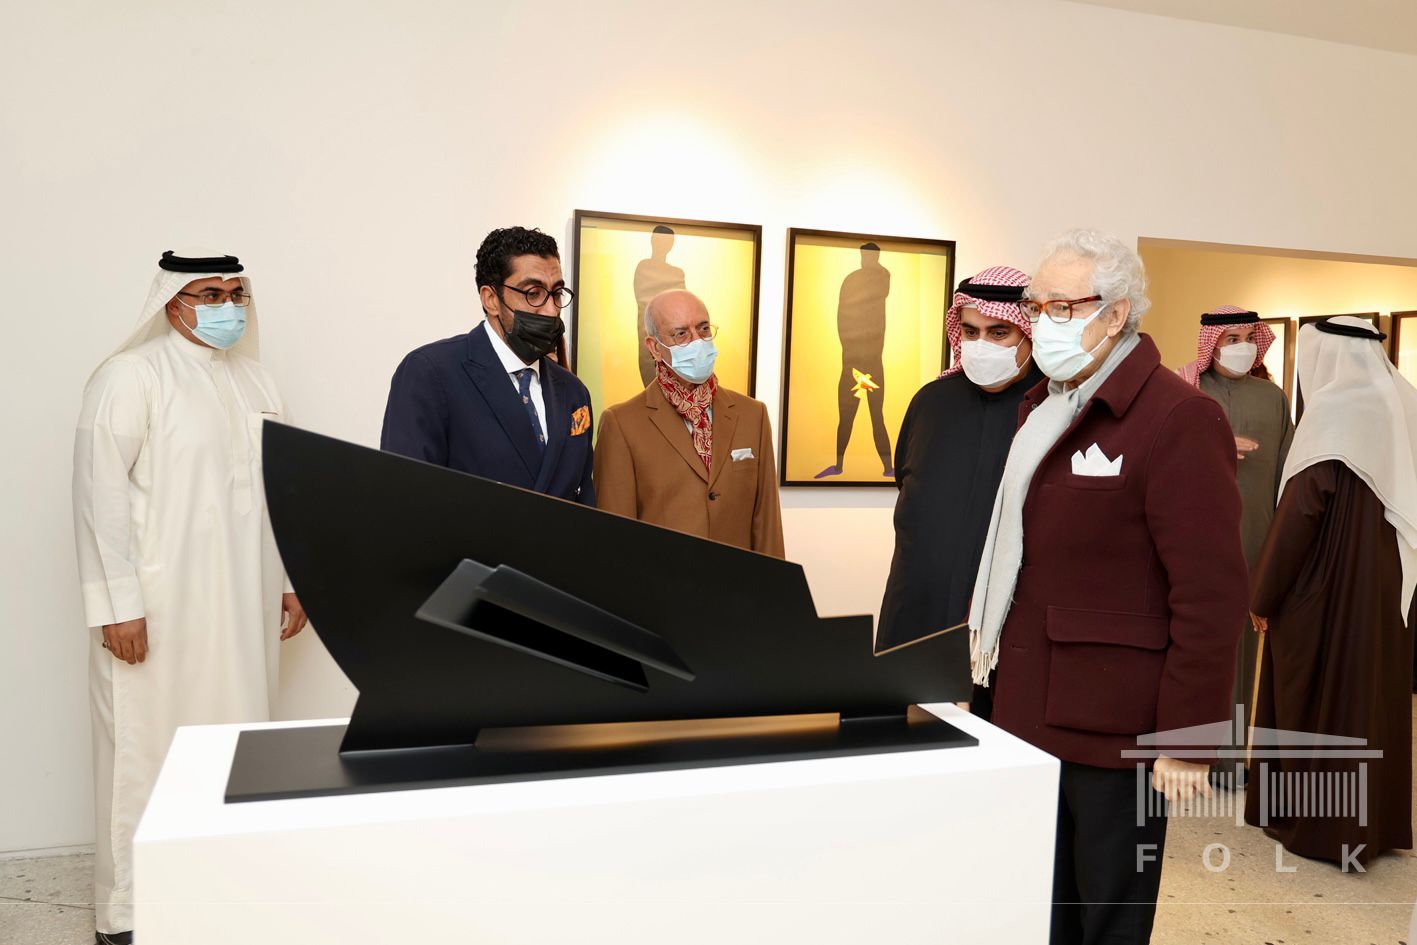 فاروق حسني يحضر افتتاح معرض حنين للفنان البحريني خالد فرحان